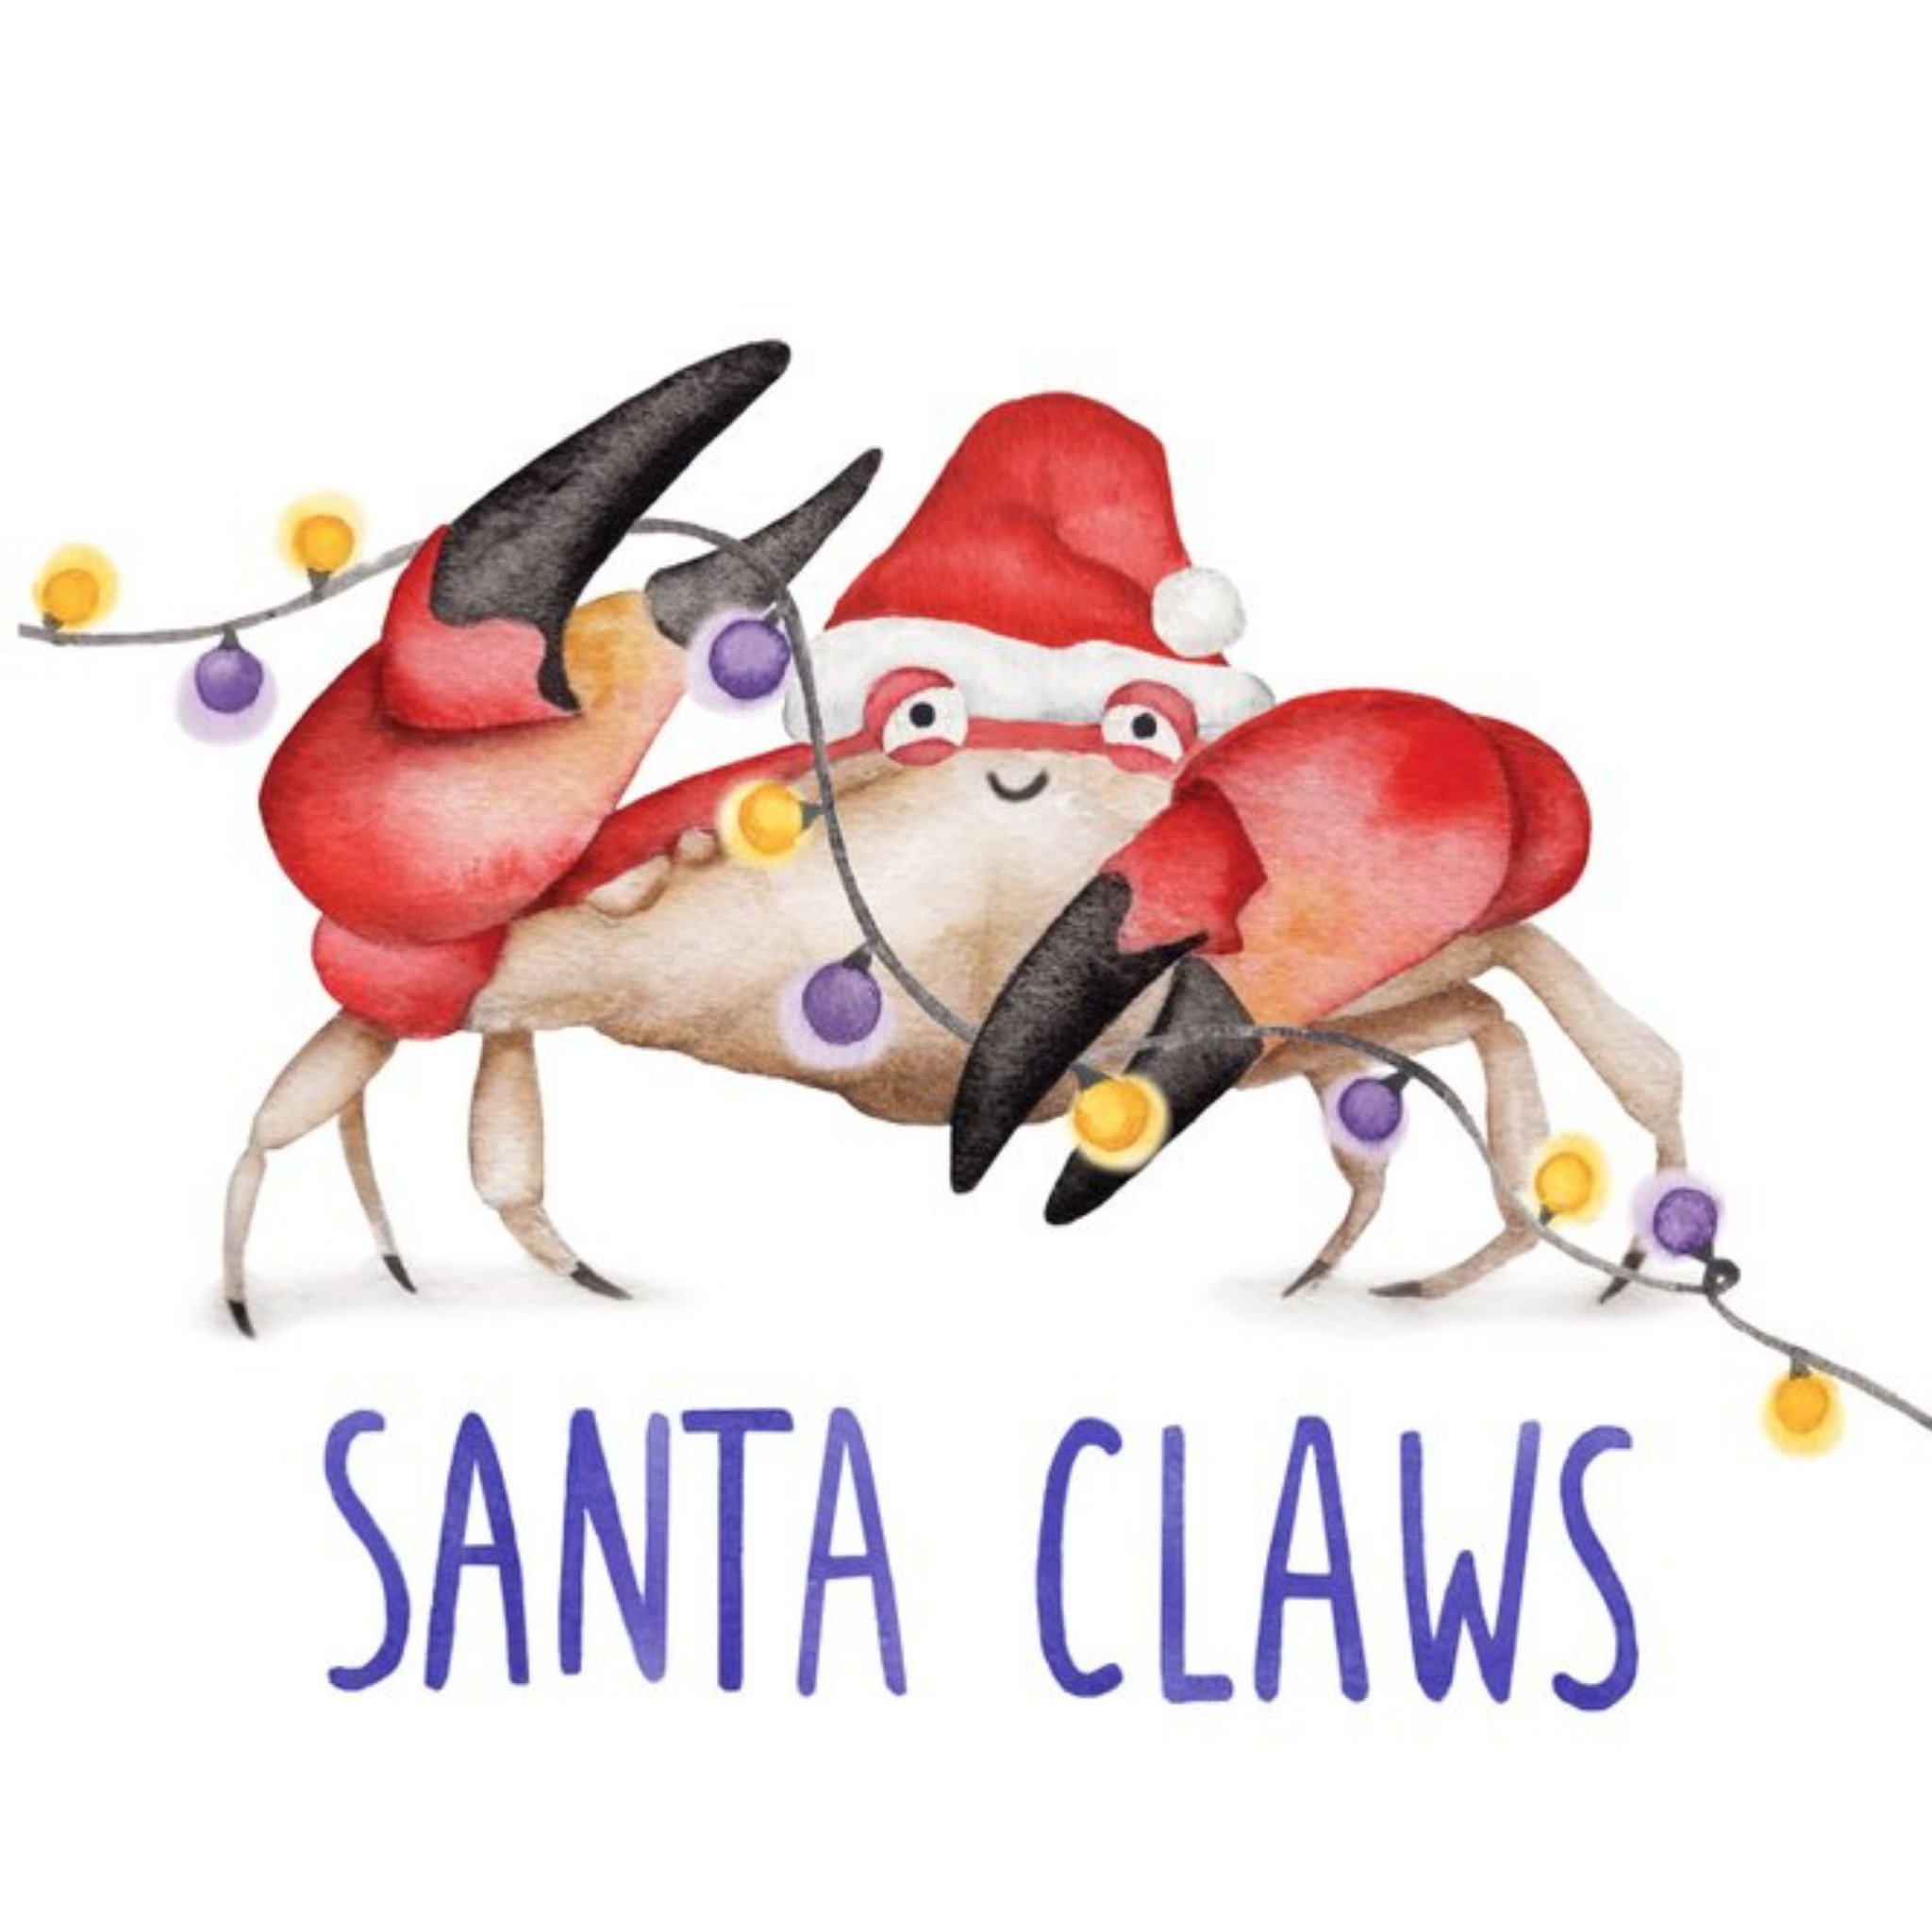 Moonpig Crab Santa Claws Pun Christmas Card, Large